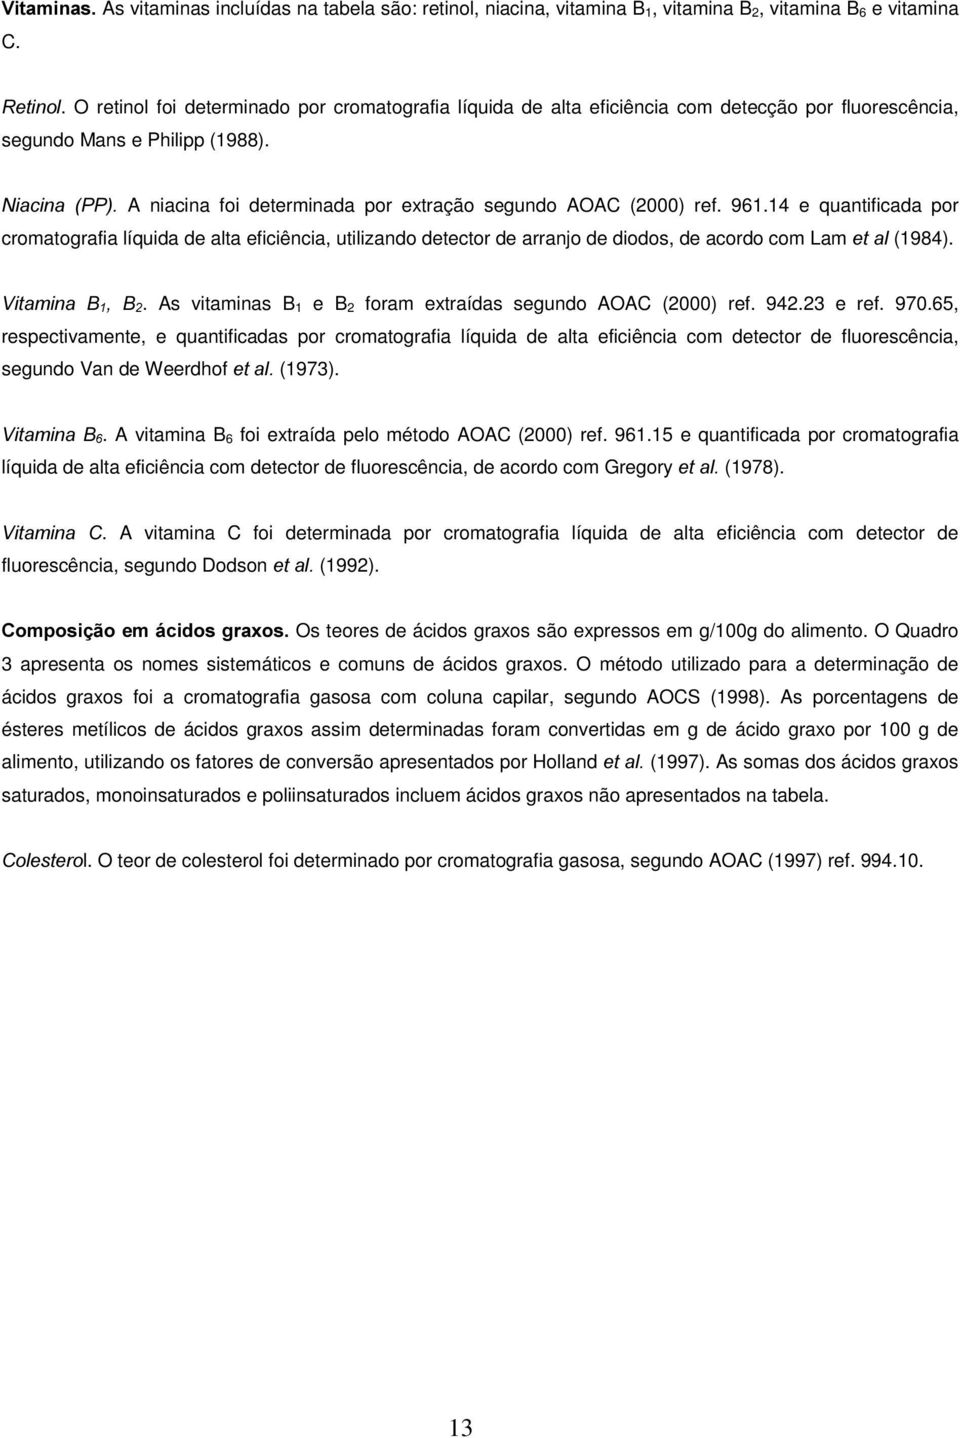 1LDFLQD 33 A niacina foi determinada por extração segundo AOAC (2000) ref. 961.